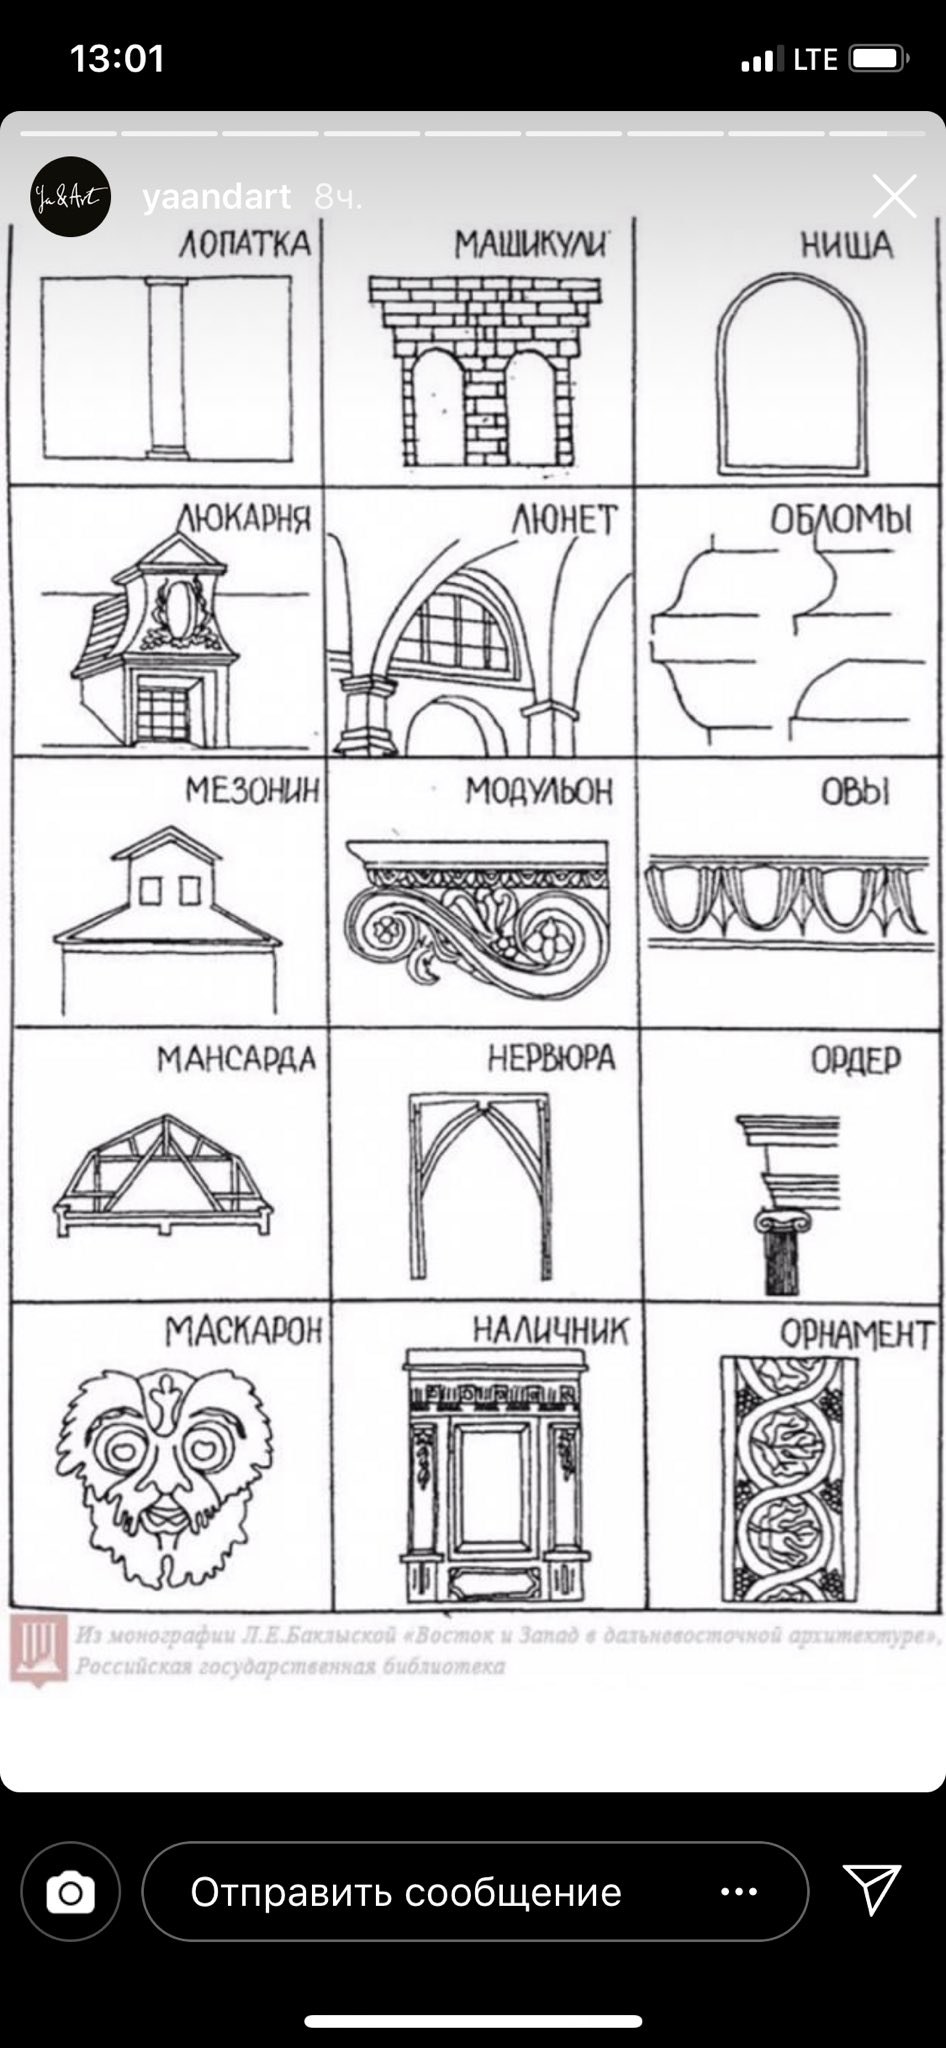 Характерные элементы различных архитектурных стилей таблица